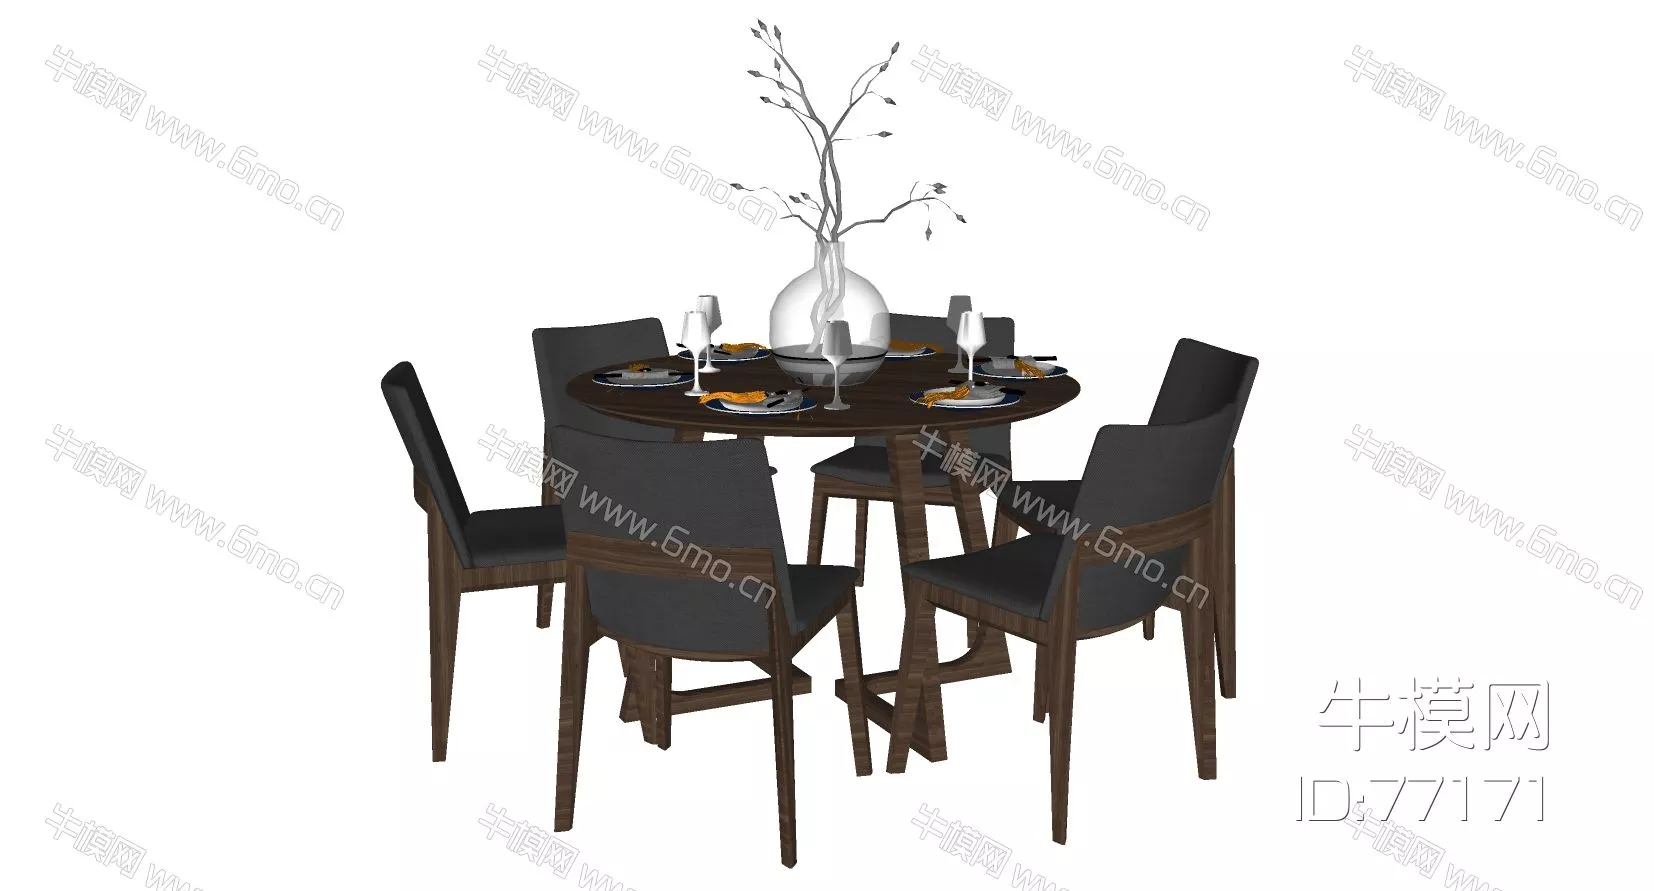 MODERN DINING TABLE SET - SKETCHUP 3D MODEL - ENSCAPE - 77171